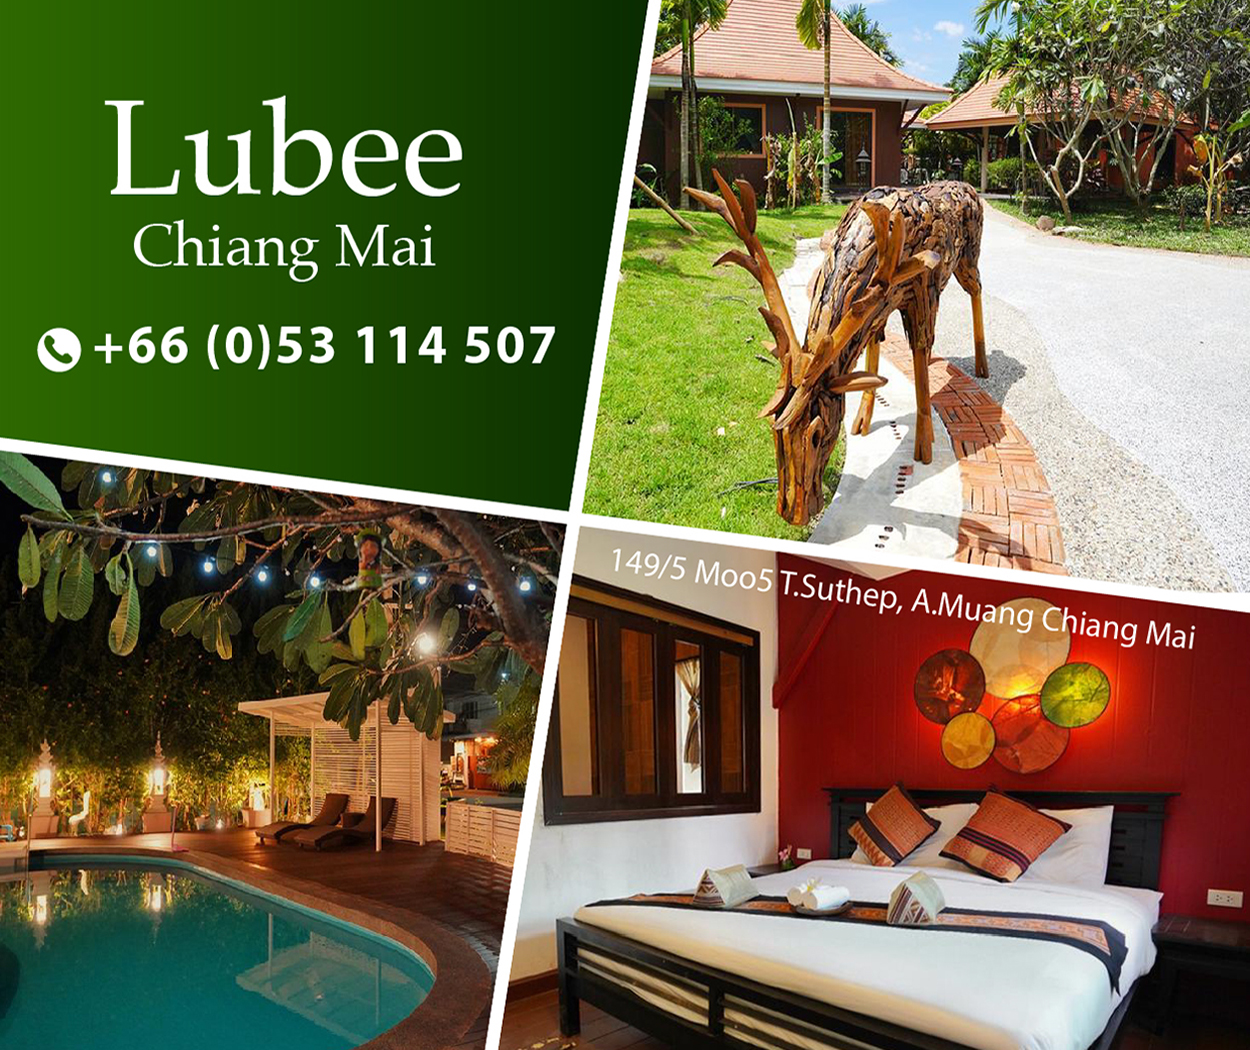 Lubee Chiang Mai